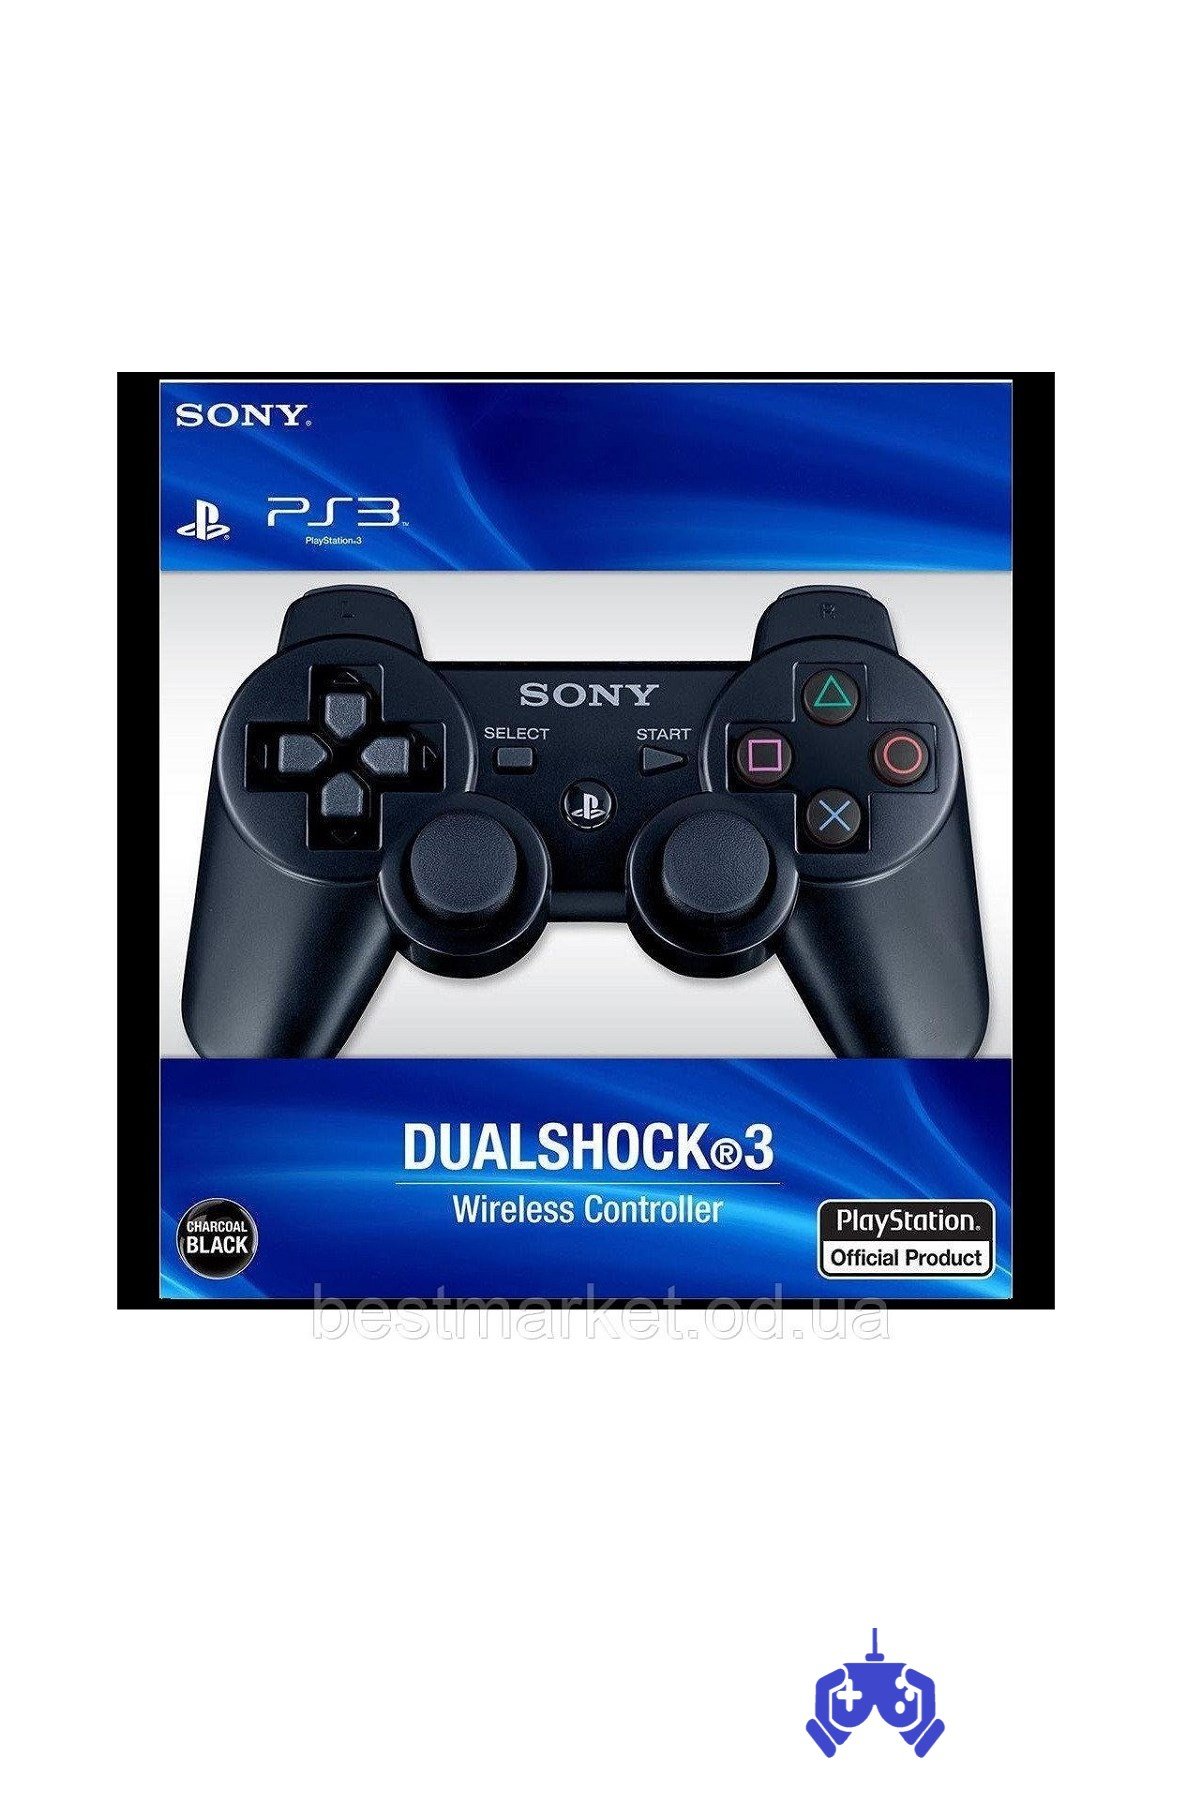 Ps3 Oyun Kolu Dualshock 3 Joystick En İyi Fiyatlarla Satışta